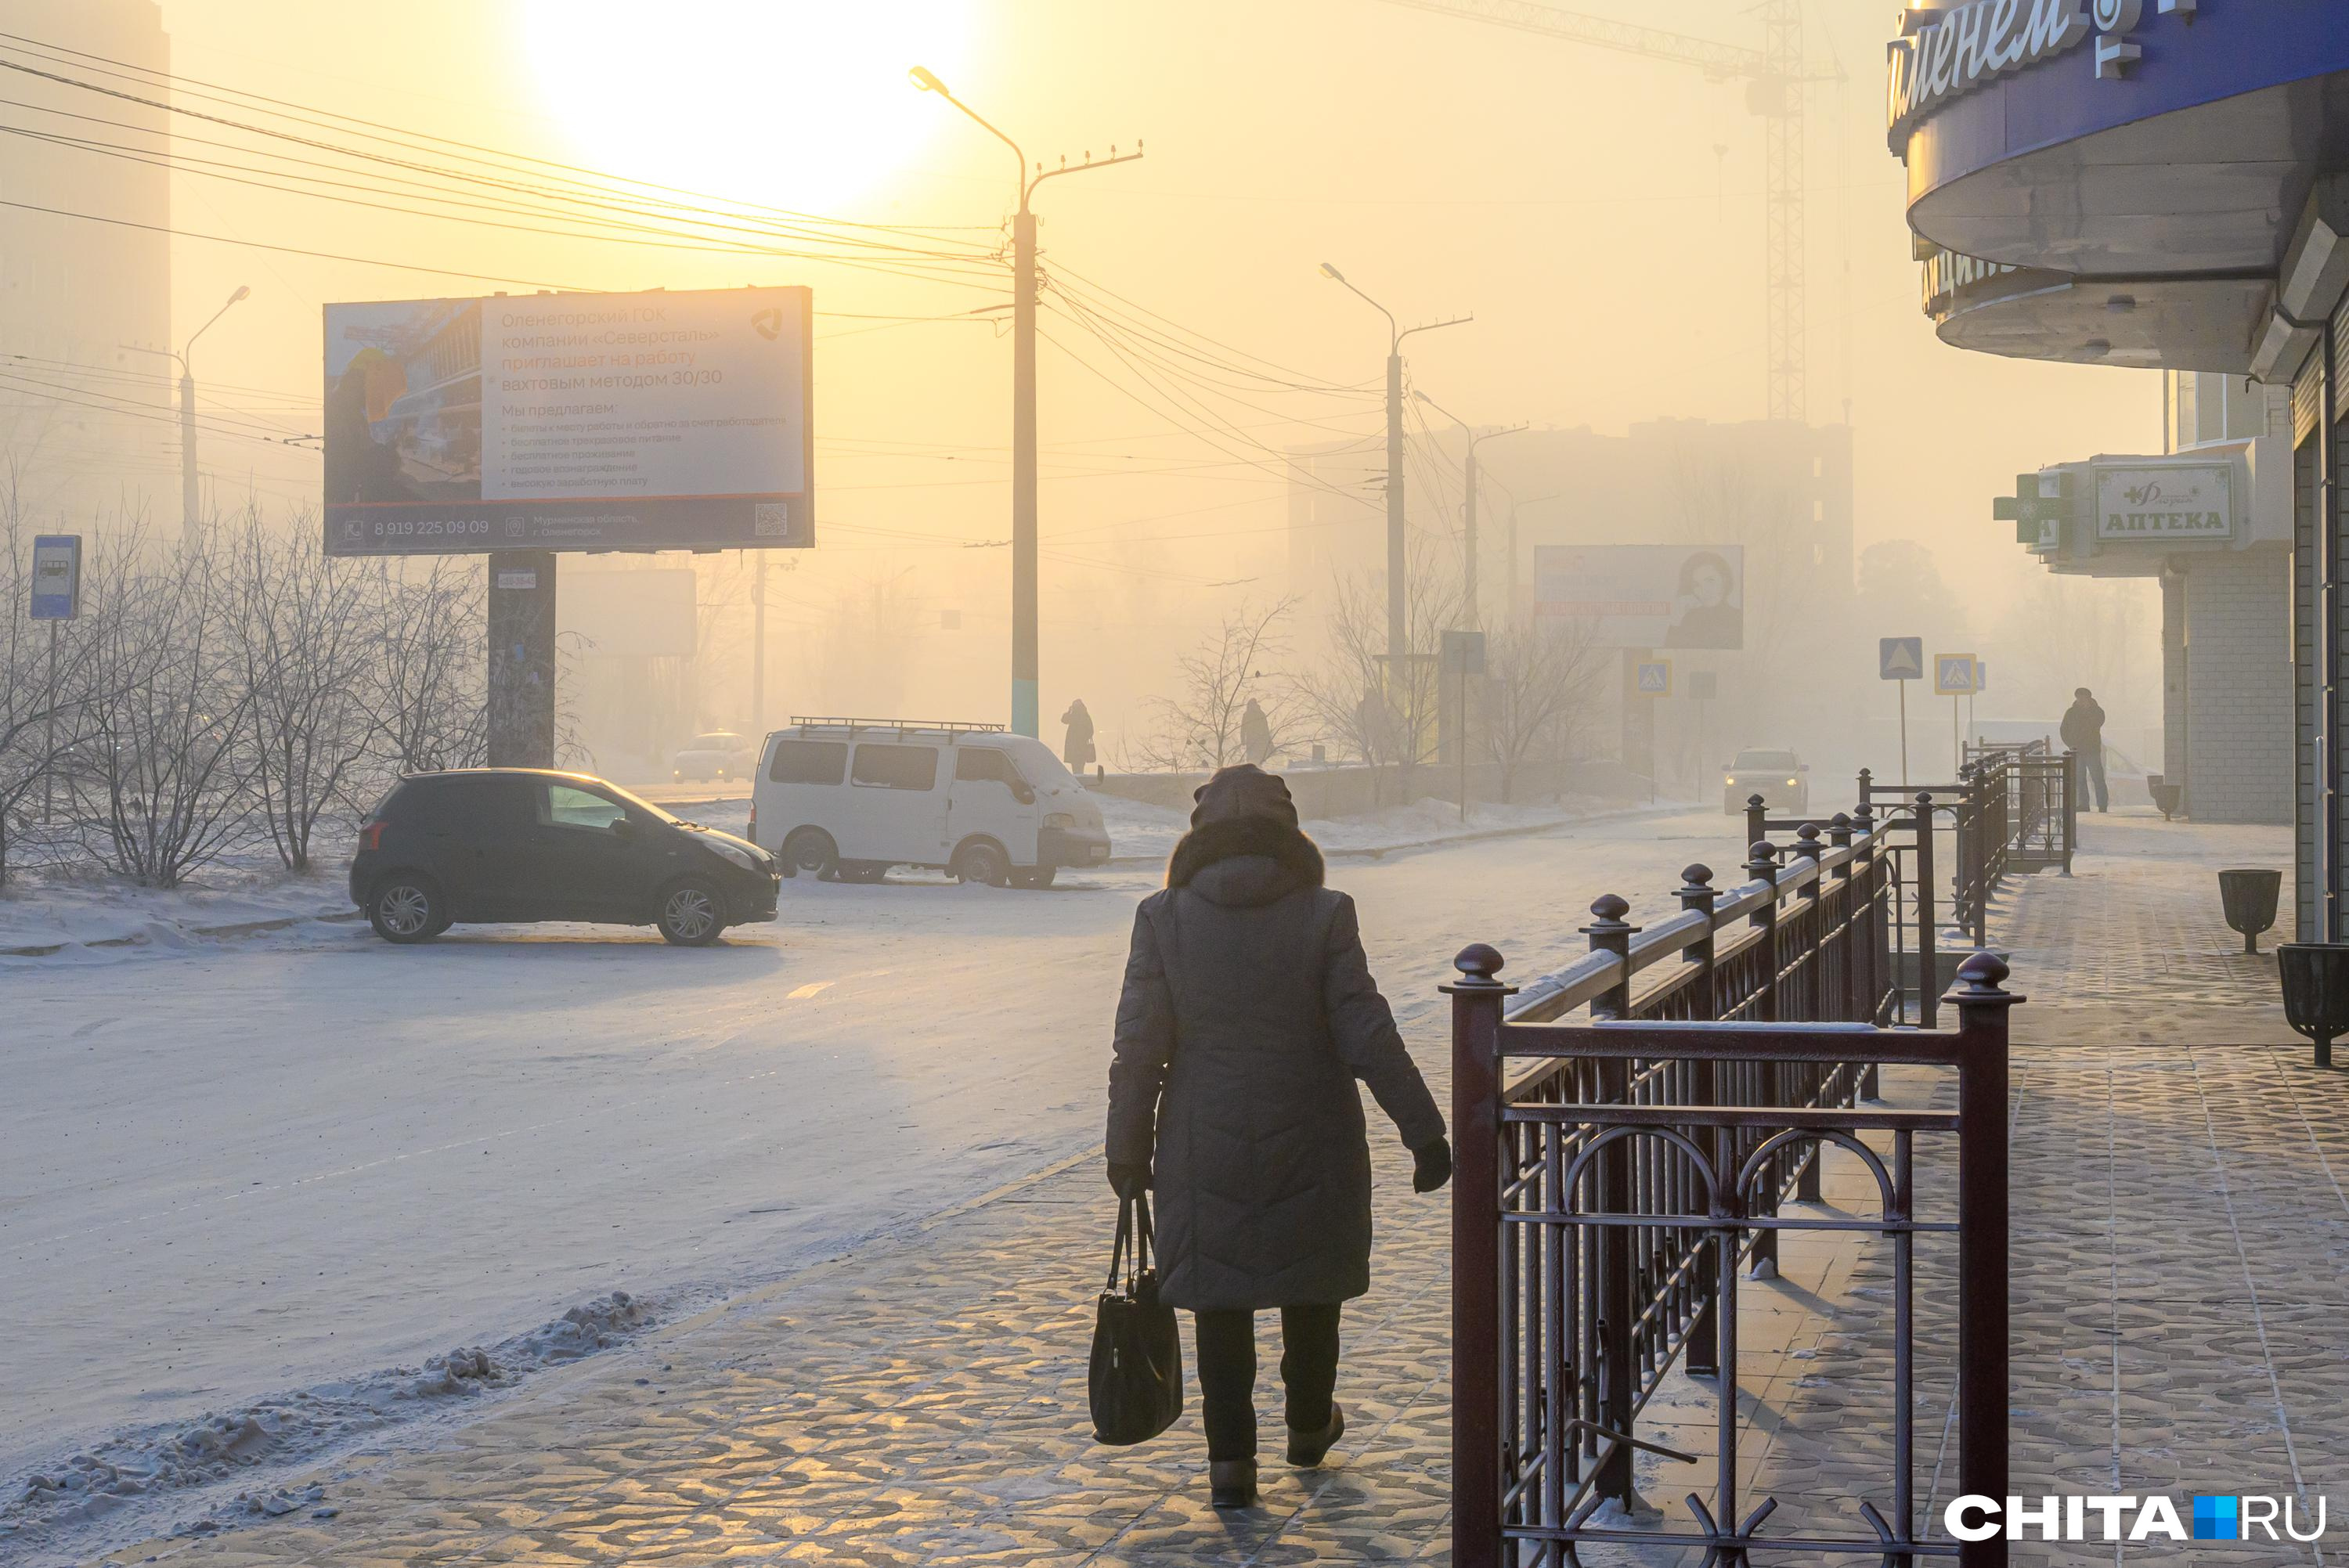 Снежные заносы и -20. В Алтайском крае резко похолодало после оттепели: смотрим прогнозы на неделю